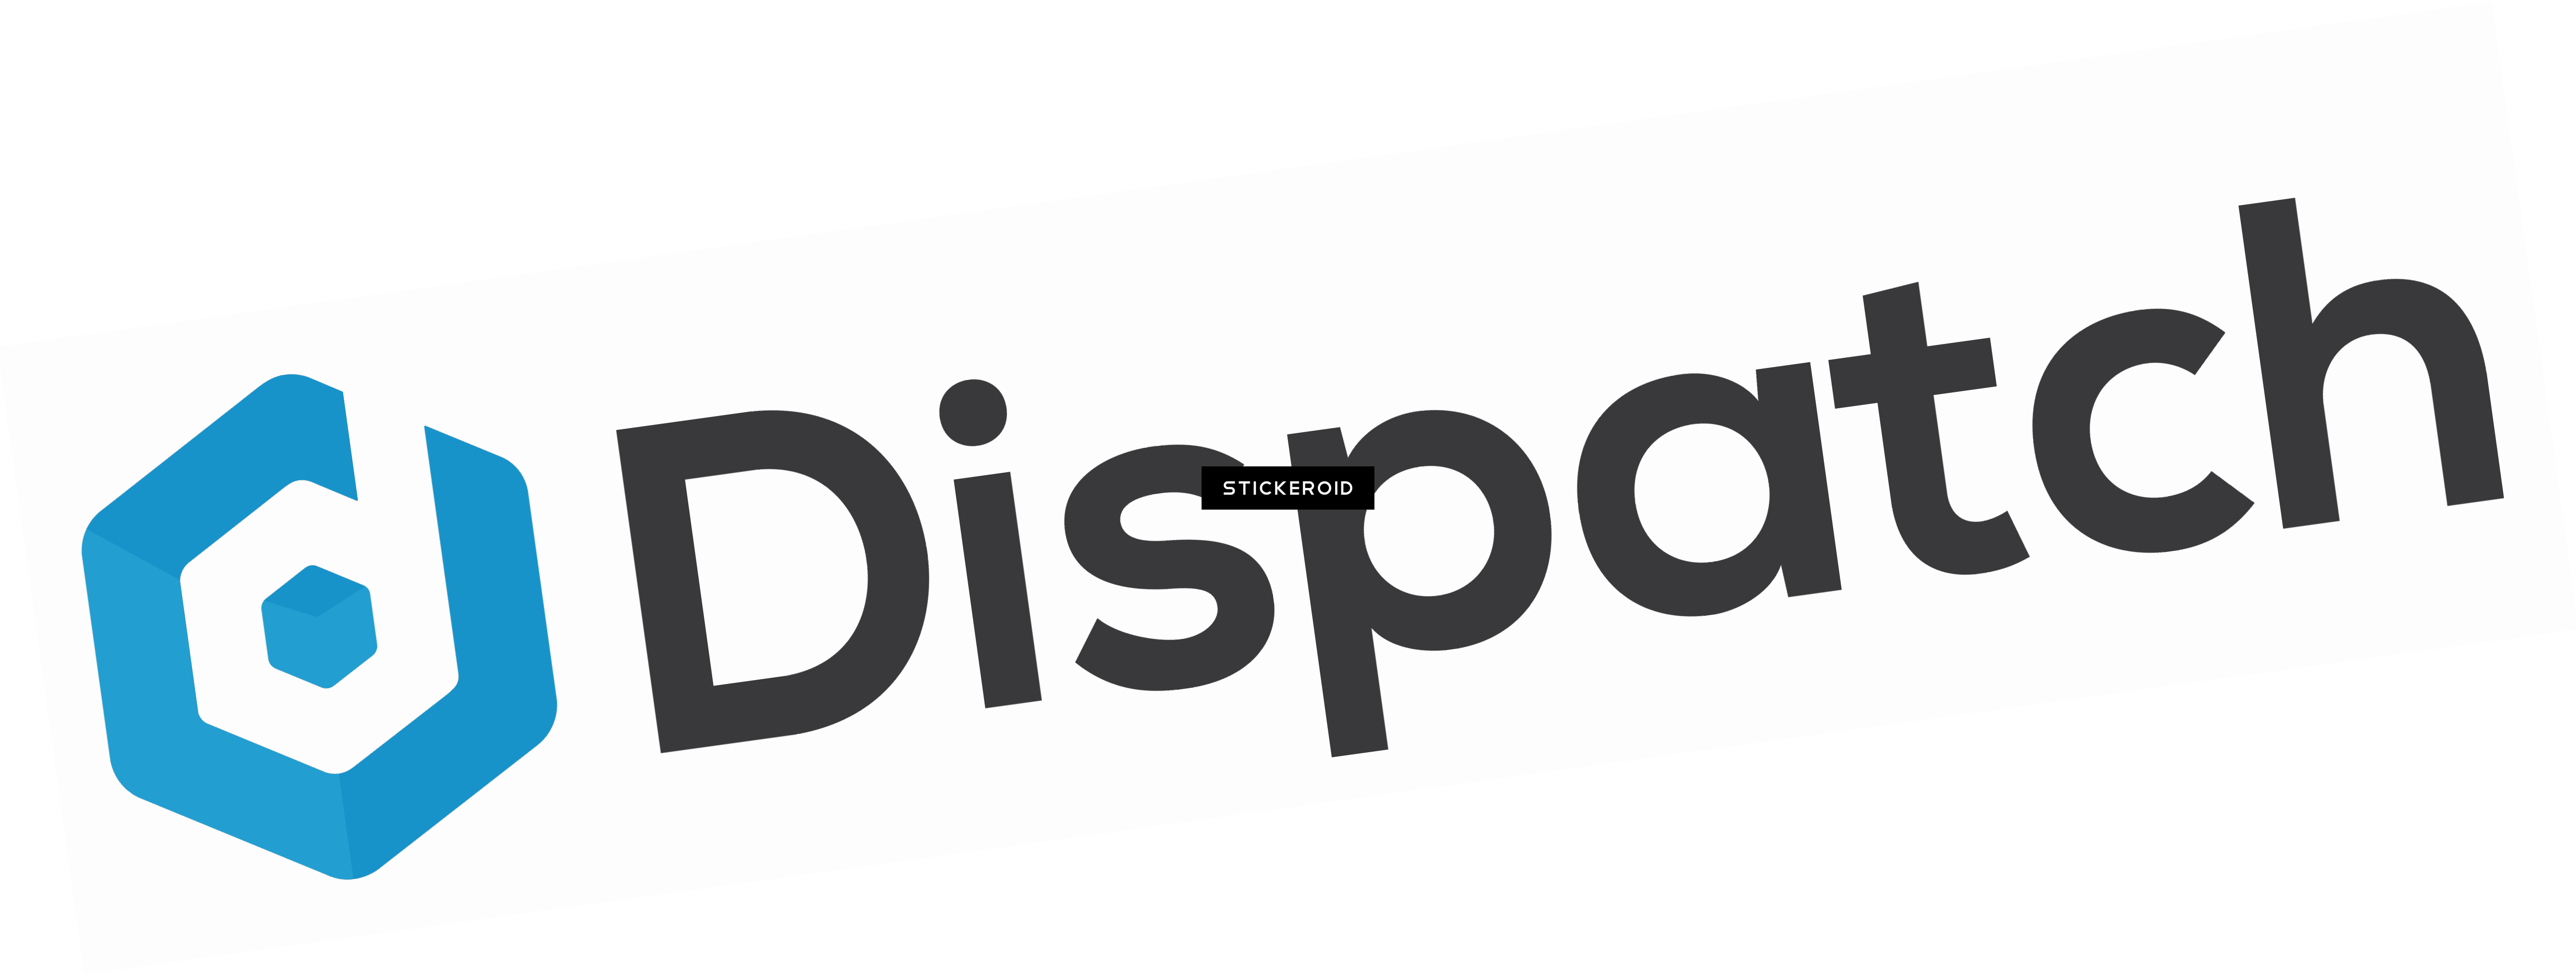 Dispatch Logo - Dispatch Logo.PNG